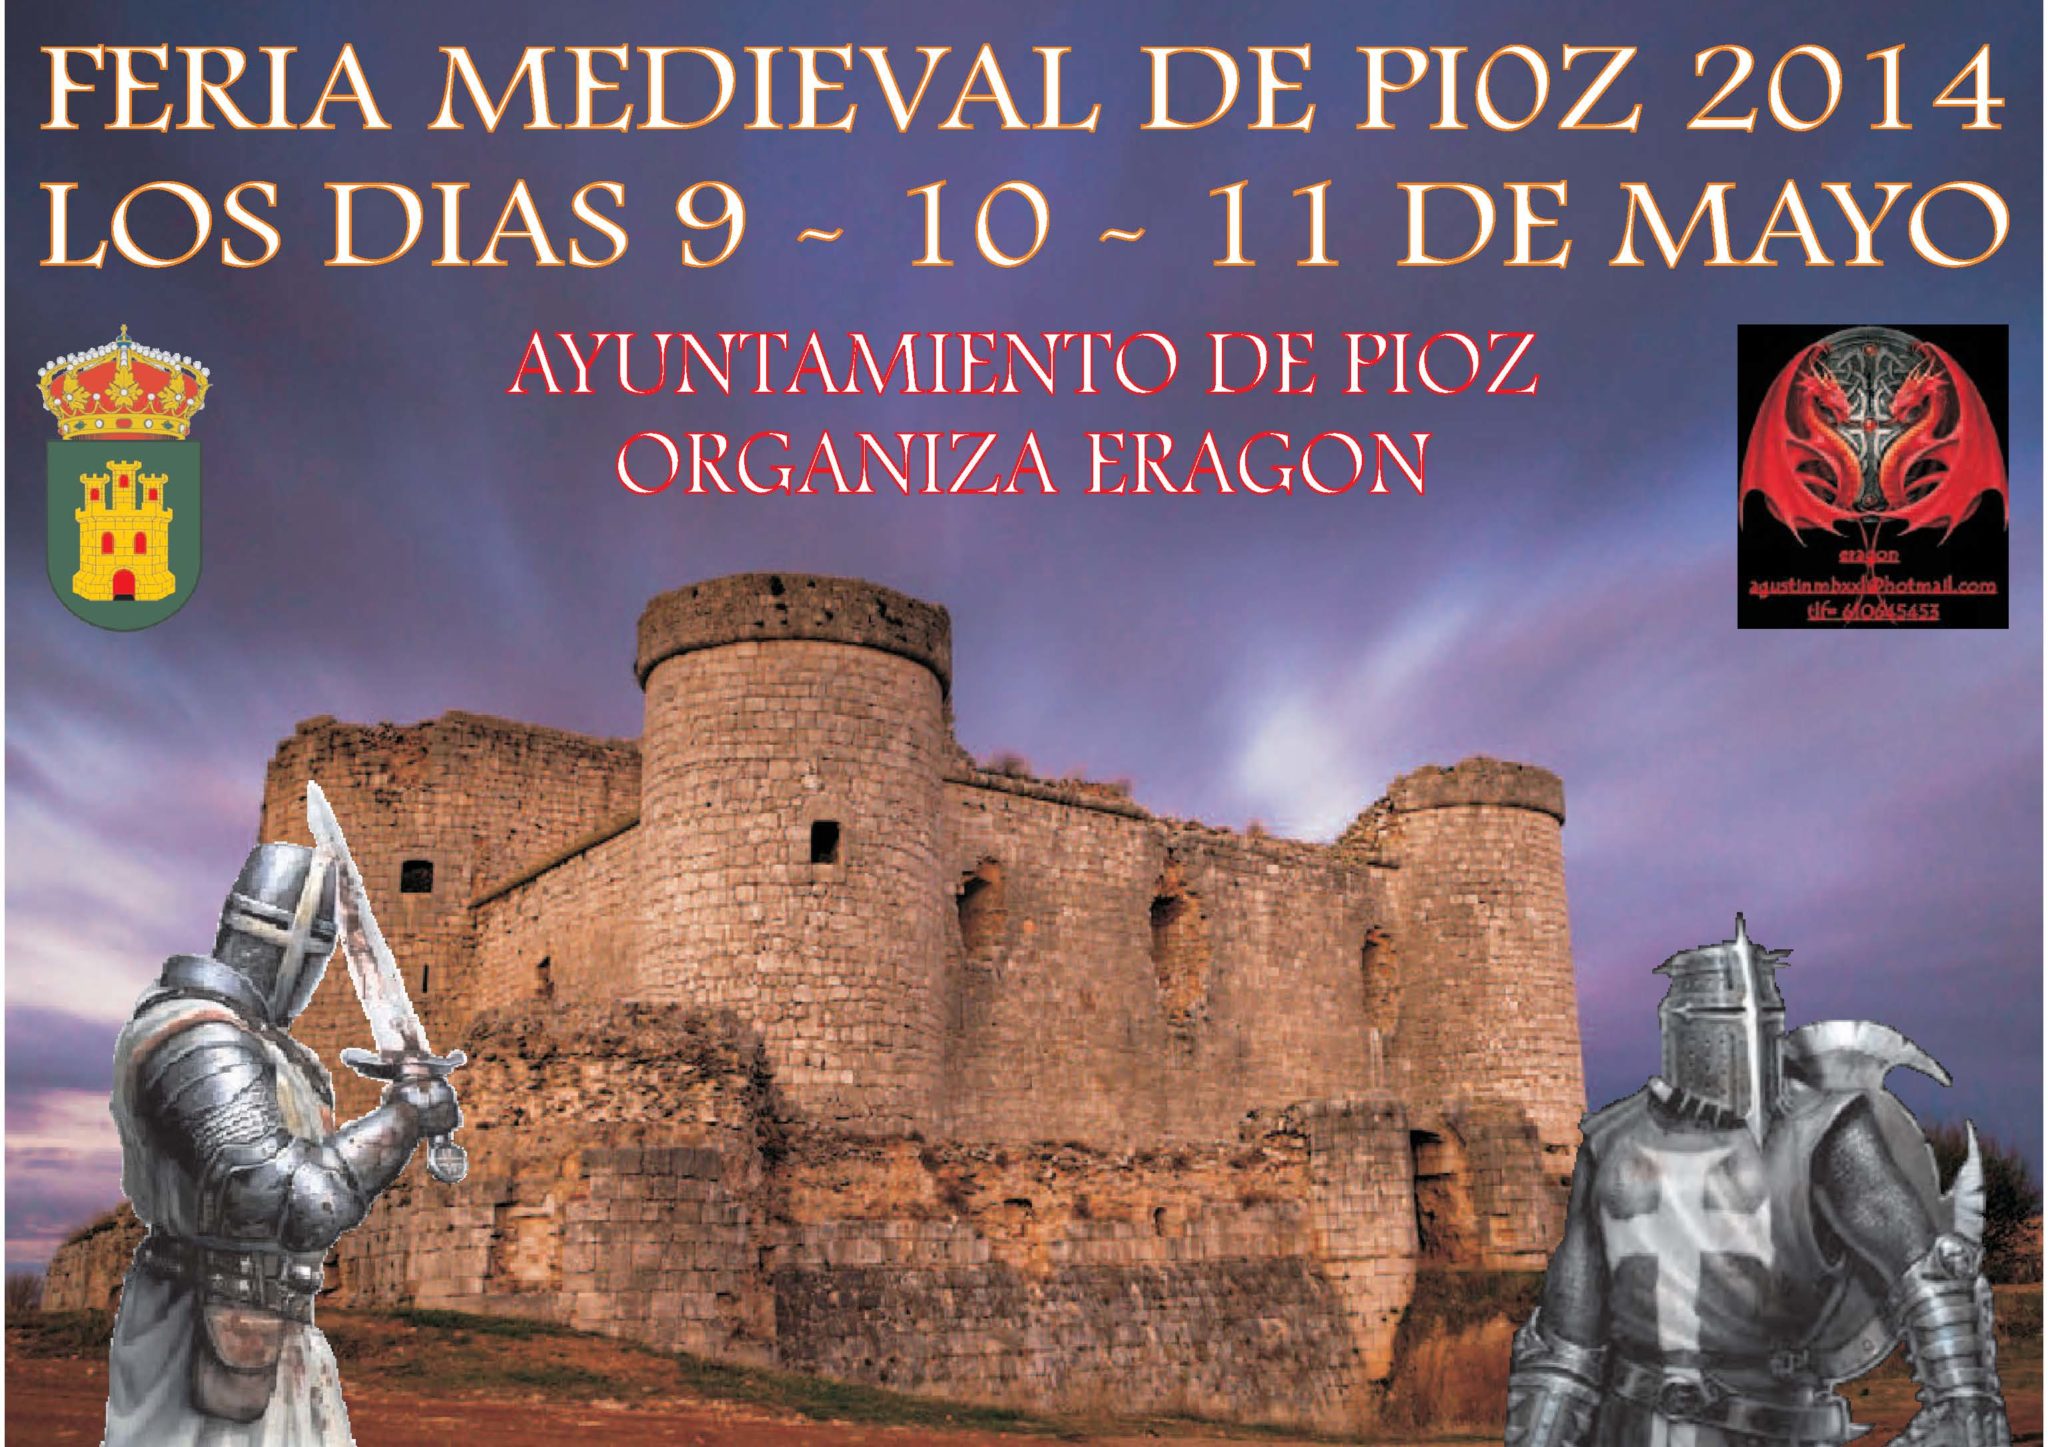 Cartel anunciador de las III Jornadas medievales en Pioz , Guadalajara 09 al 11 de mayo 2014